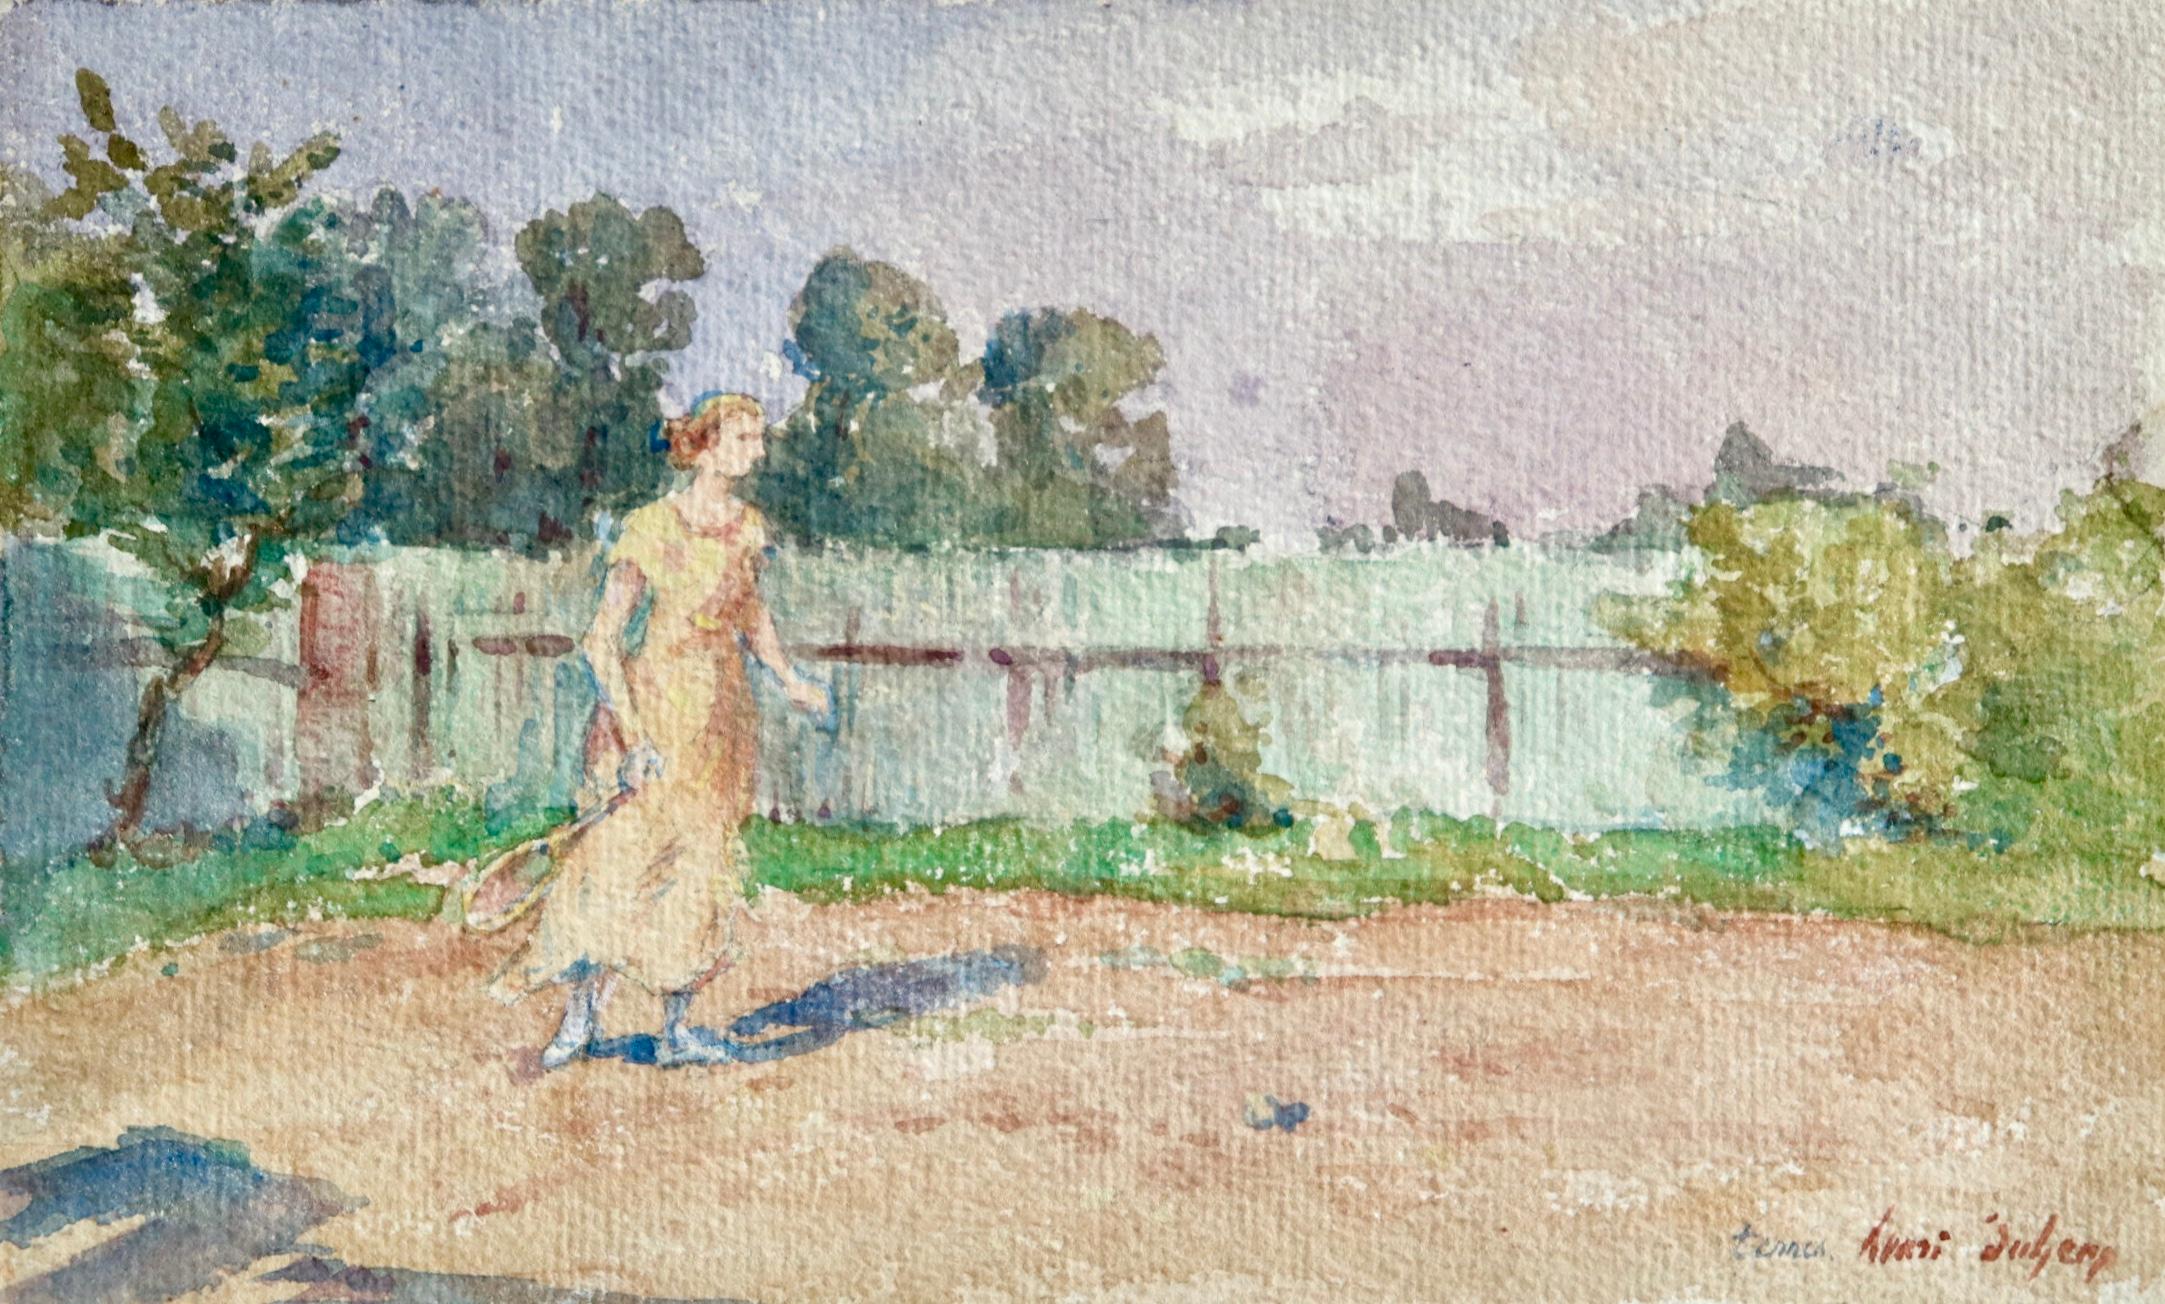 Aquarelle impressionniste « Woman Playing Tennis in Landscape » de H Duhem